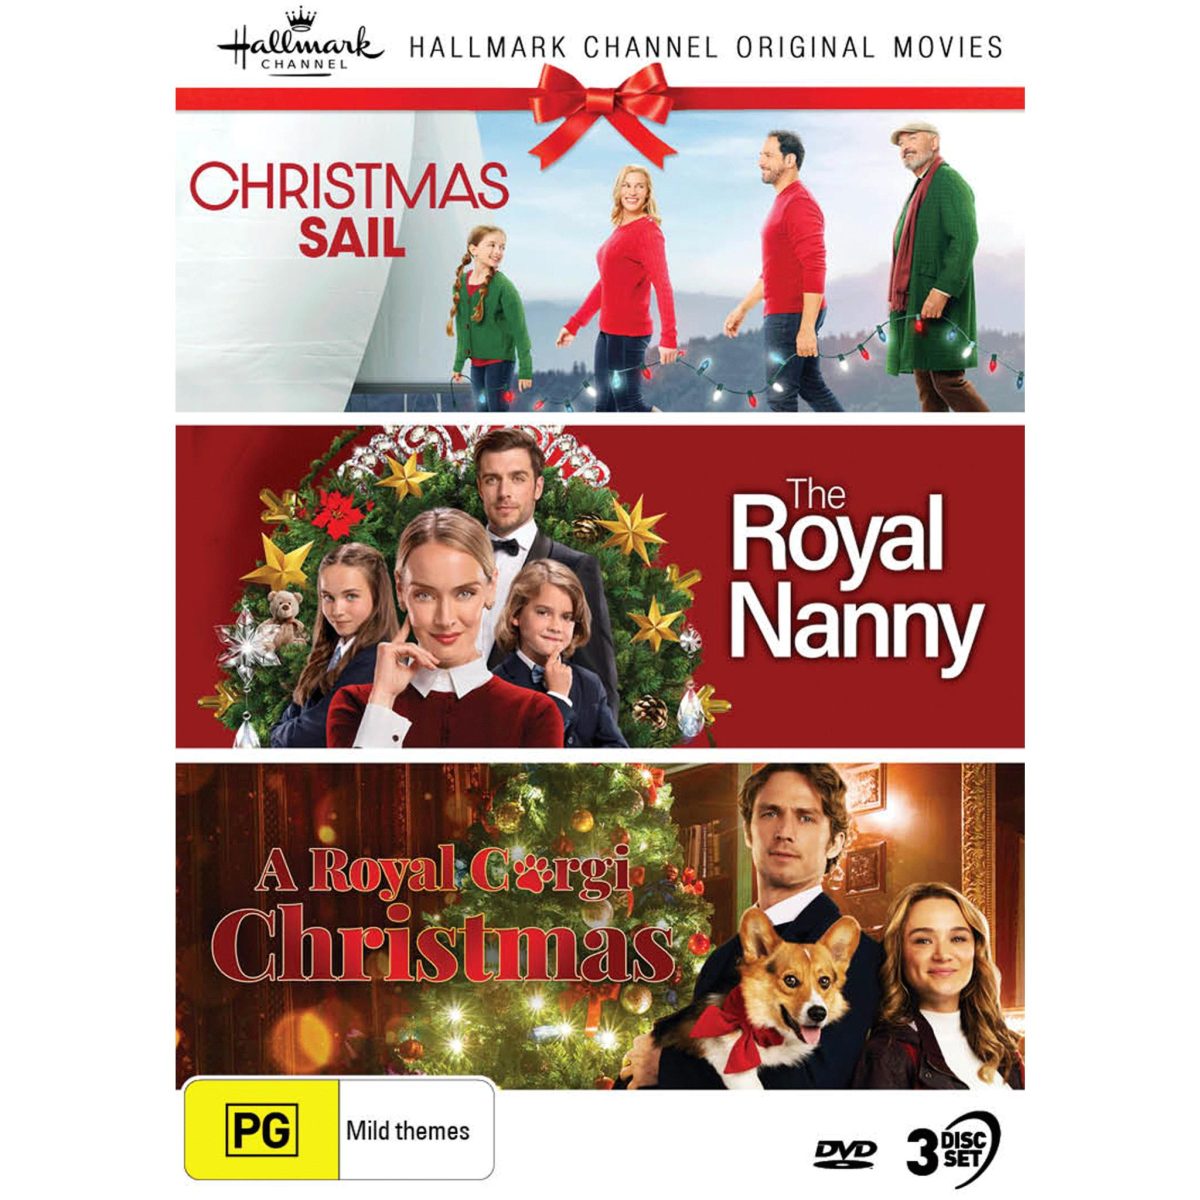 Christmas Collection: Christmas Sail / Royal Nanny / A Royal Corgi Christmas DVD